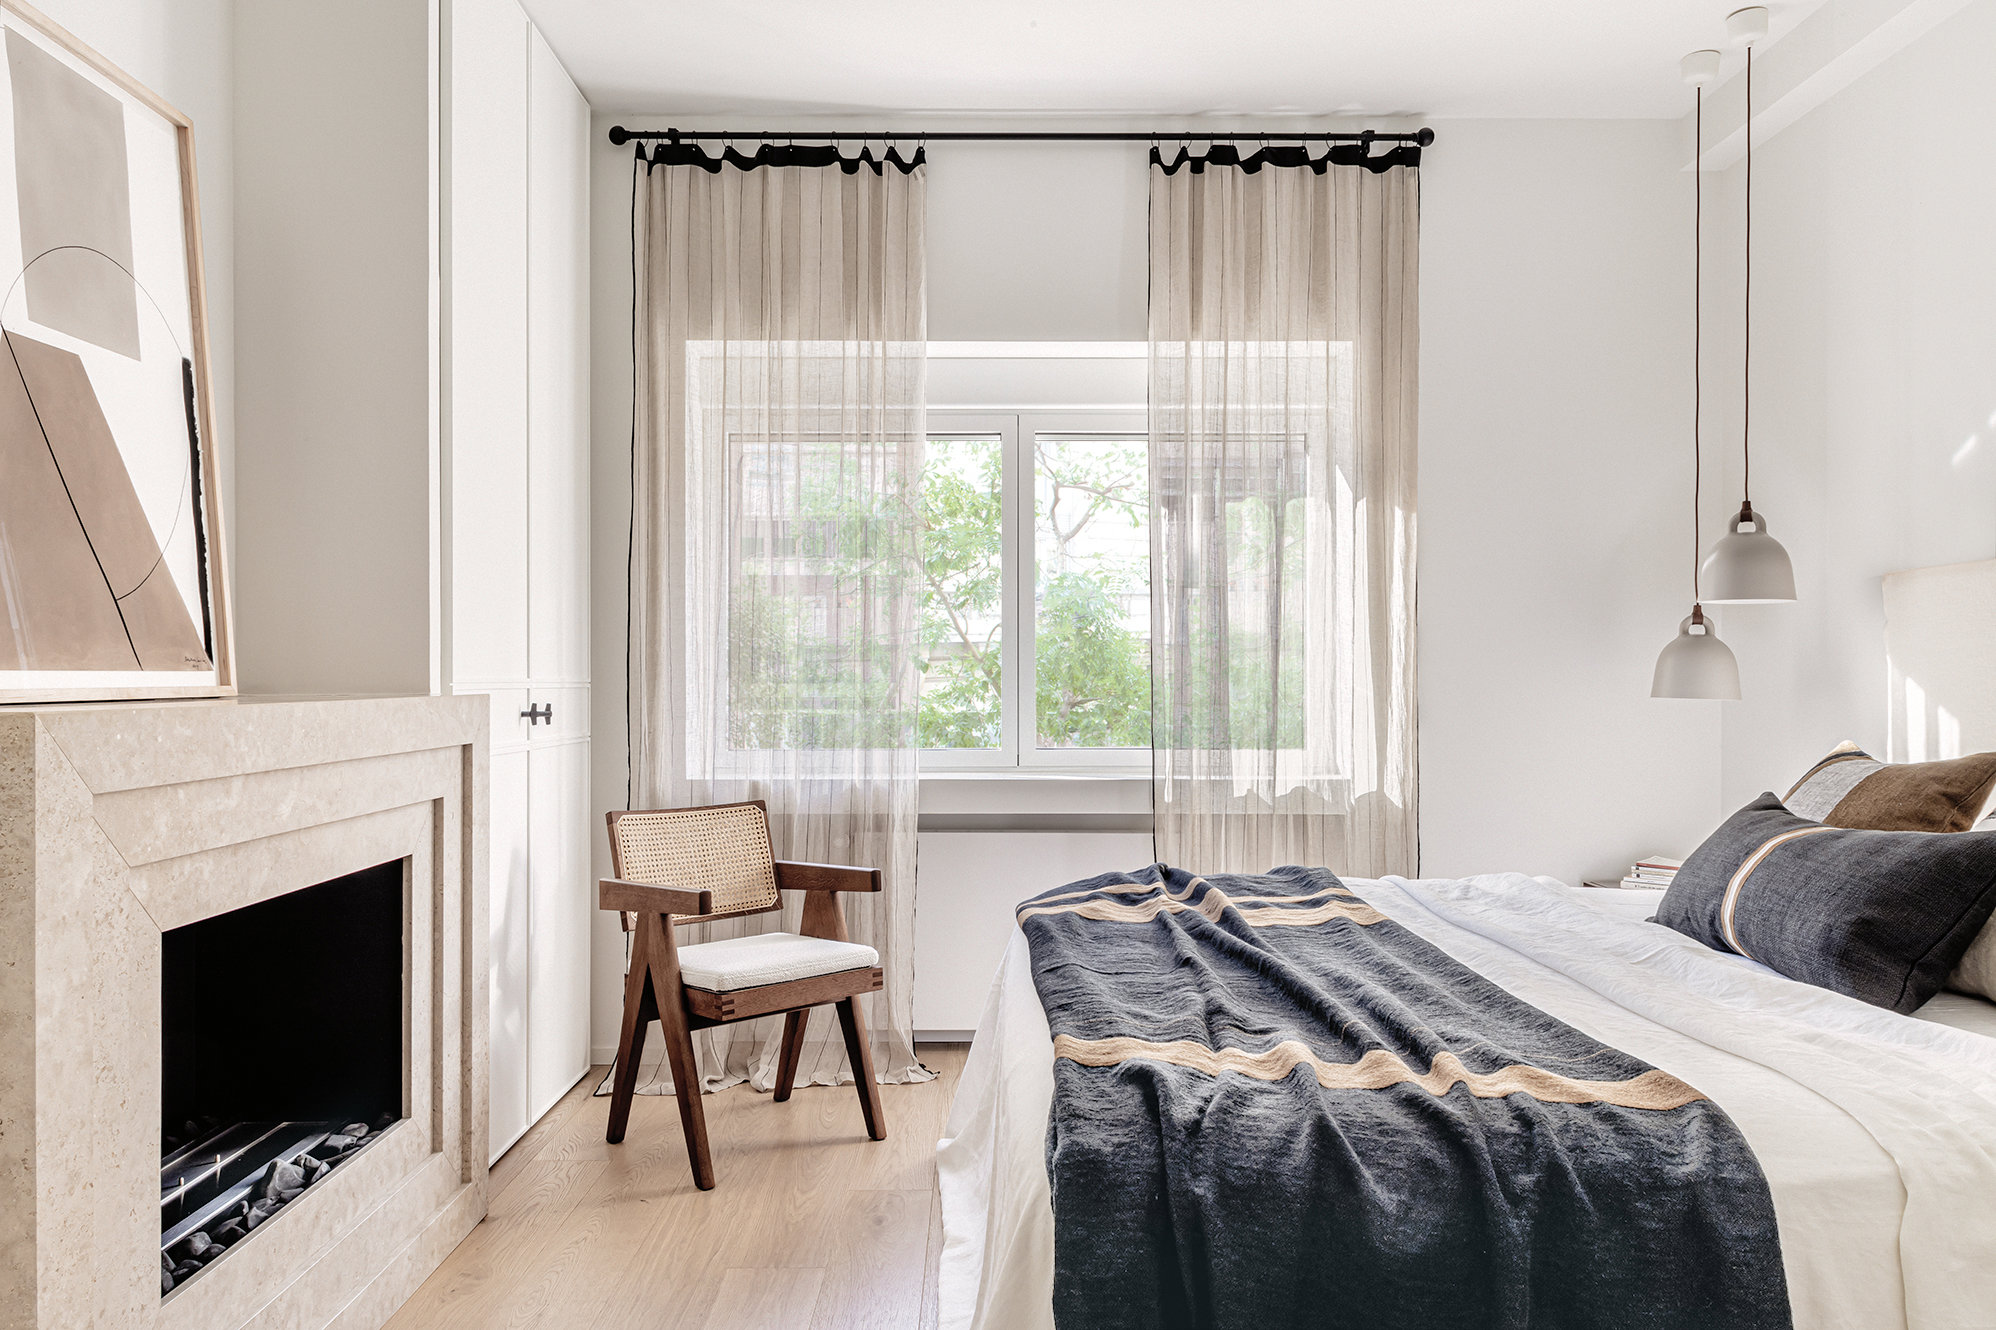 Dormitorio en tonos cálidos con cabecero, cojines y chimenea